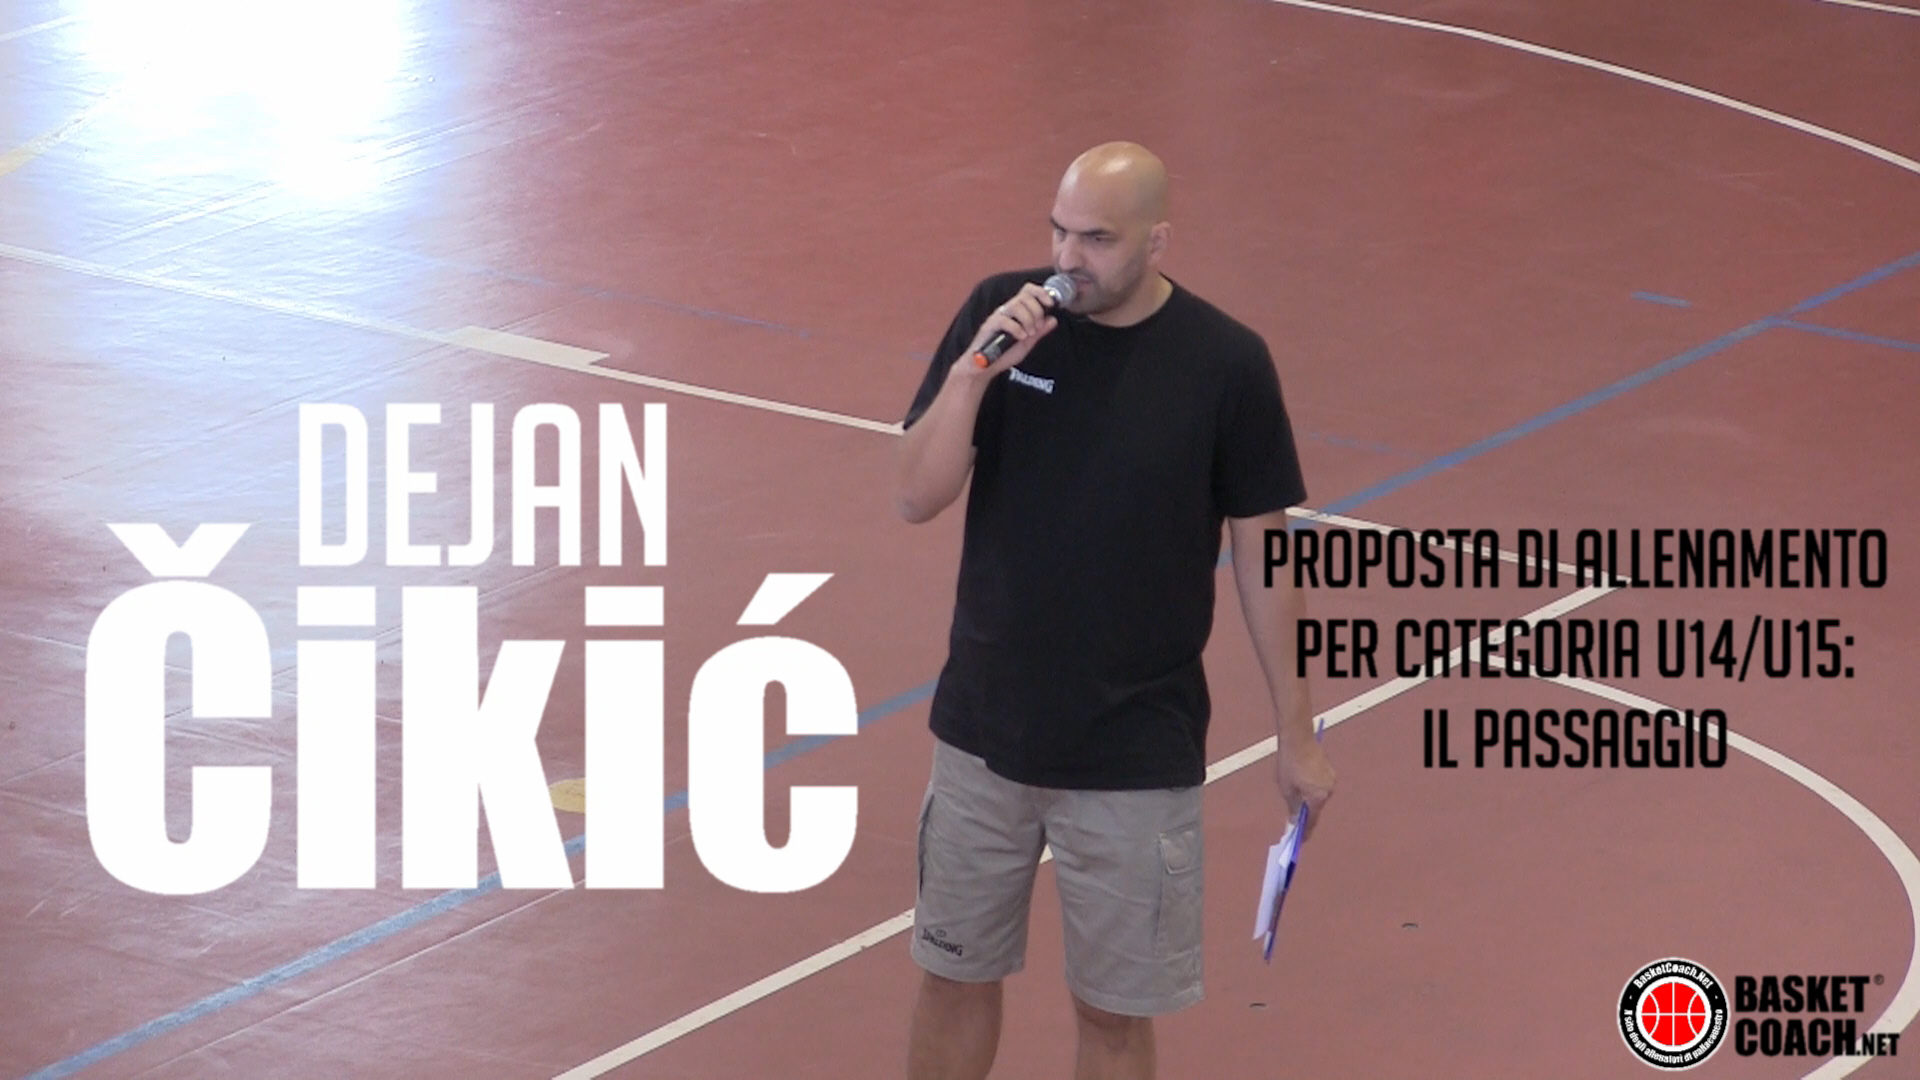 <p>Dejan Cikic - Proposta di allenamento per categoria U14-15 - Il passaggio</p>
